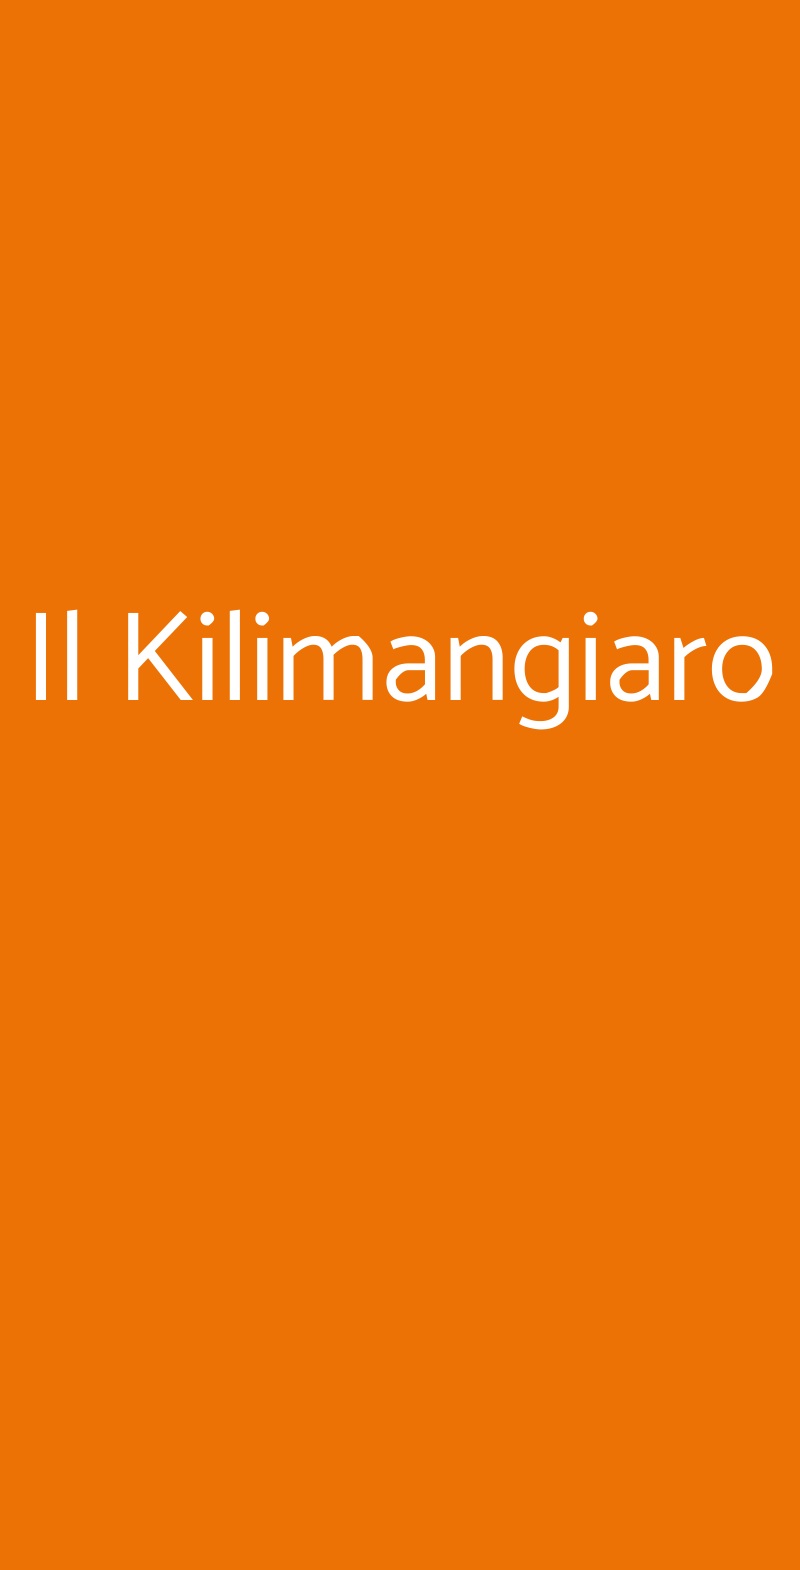 Il Kilimangiaro Milano menù 1 pagina